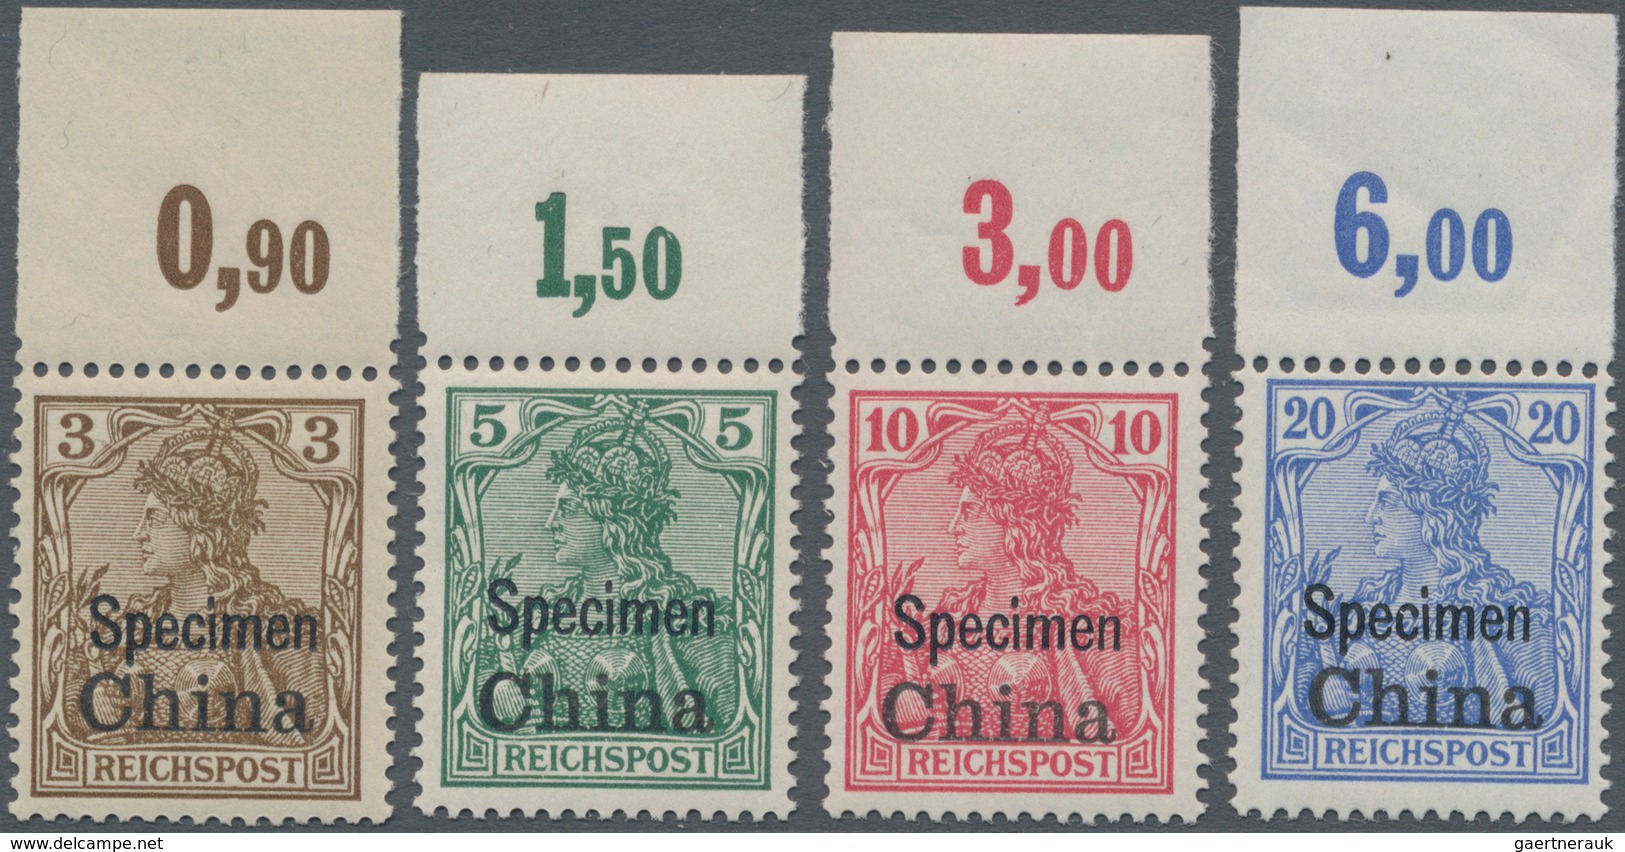 Deutsche Post In China: 1901: 3 Pfg - 5 Mk, Germania-Marken Mit Aufdruck "China" Und Zusätzlichem Bu - China (offices)